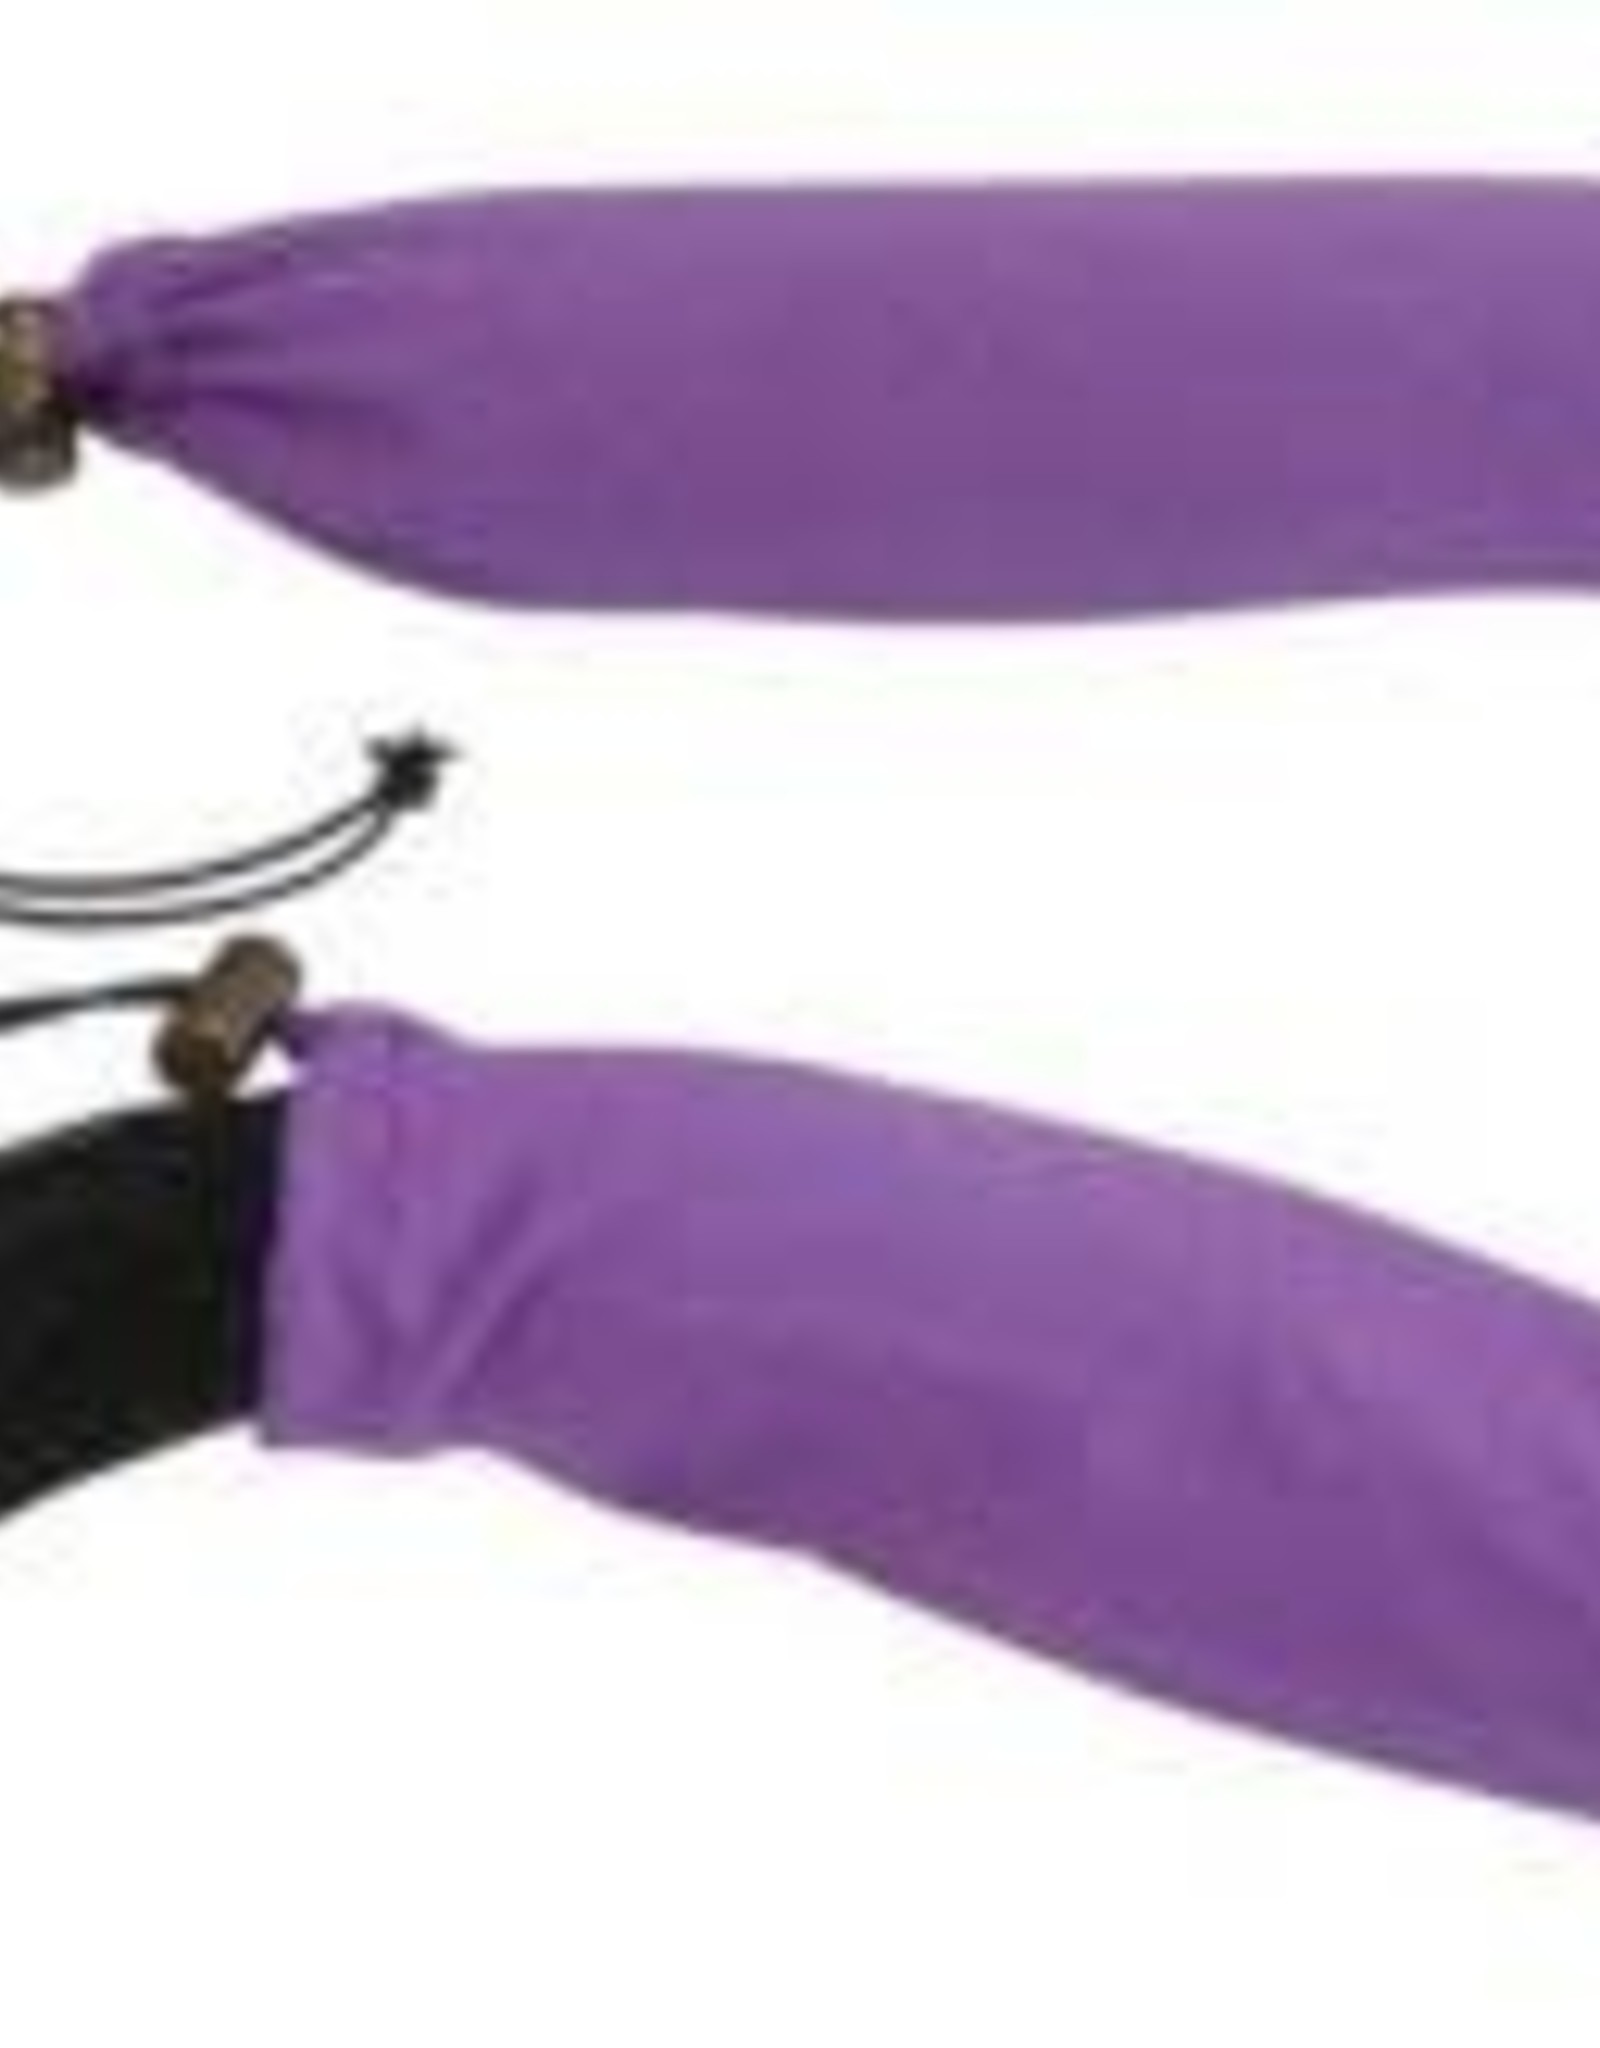 False Tail Storage Sleeve - Purple